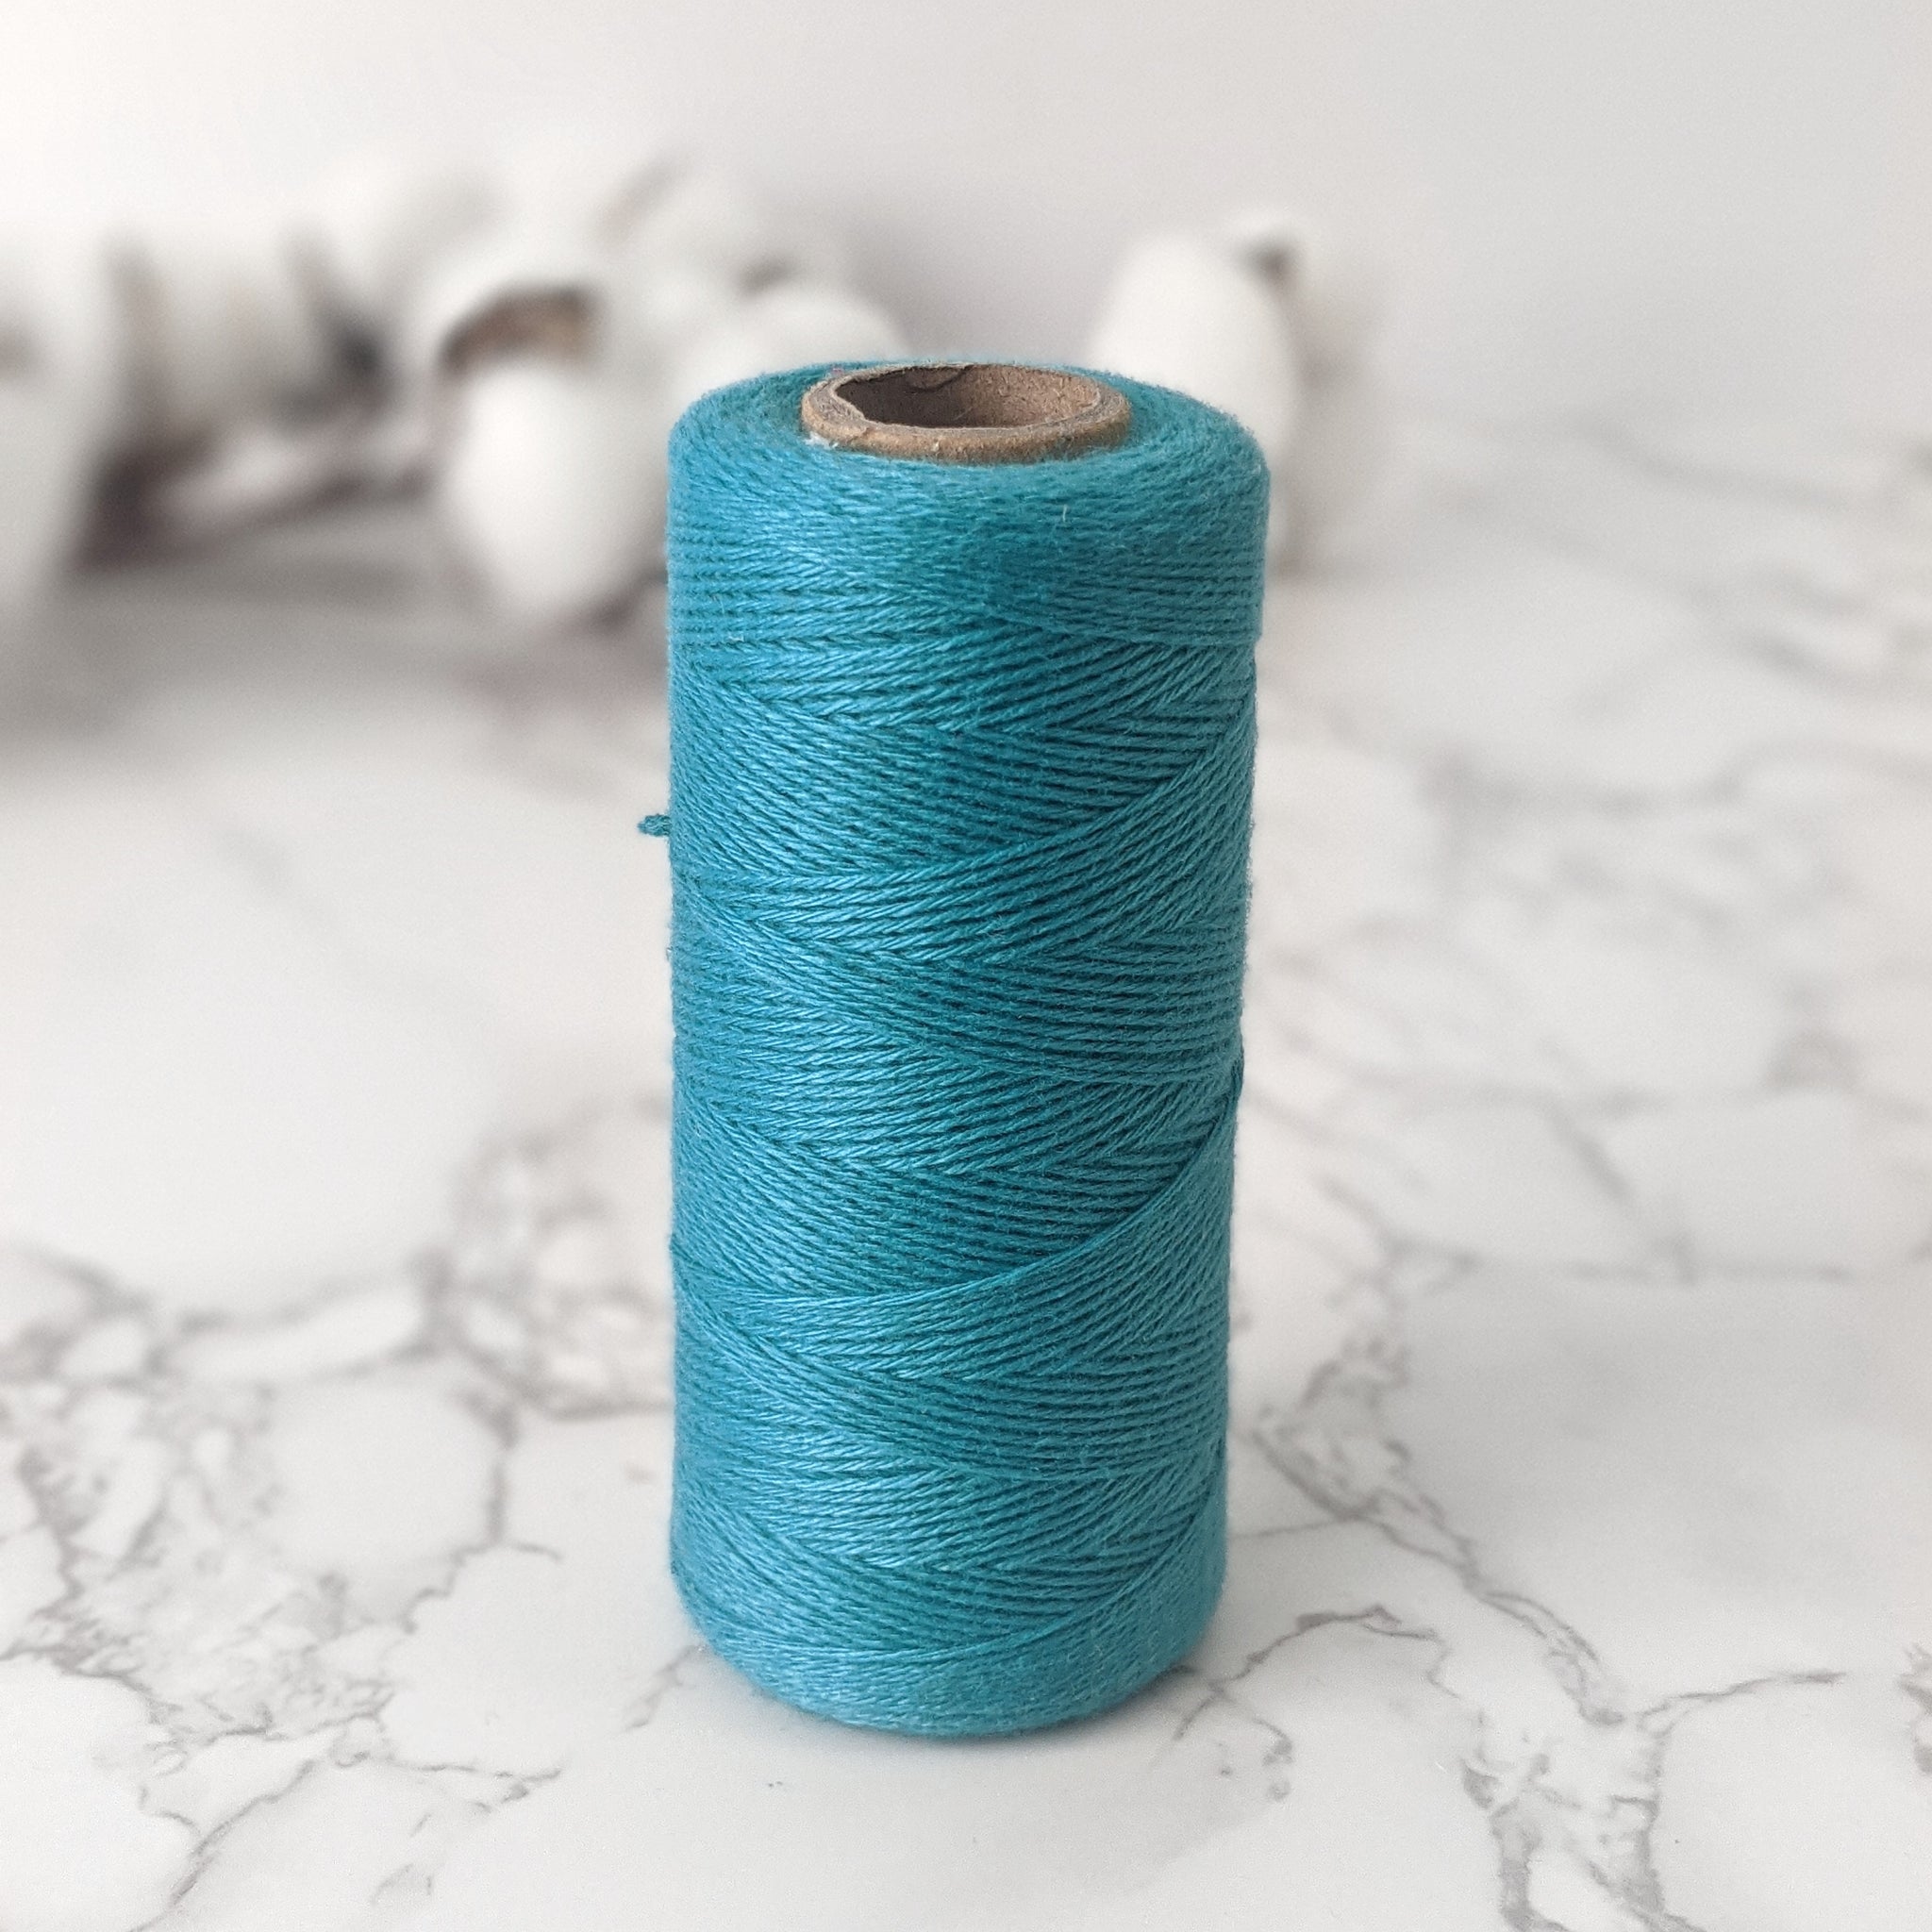 Cotton Warp Thread - Teal - 80g